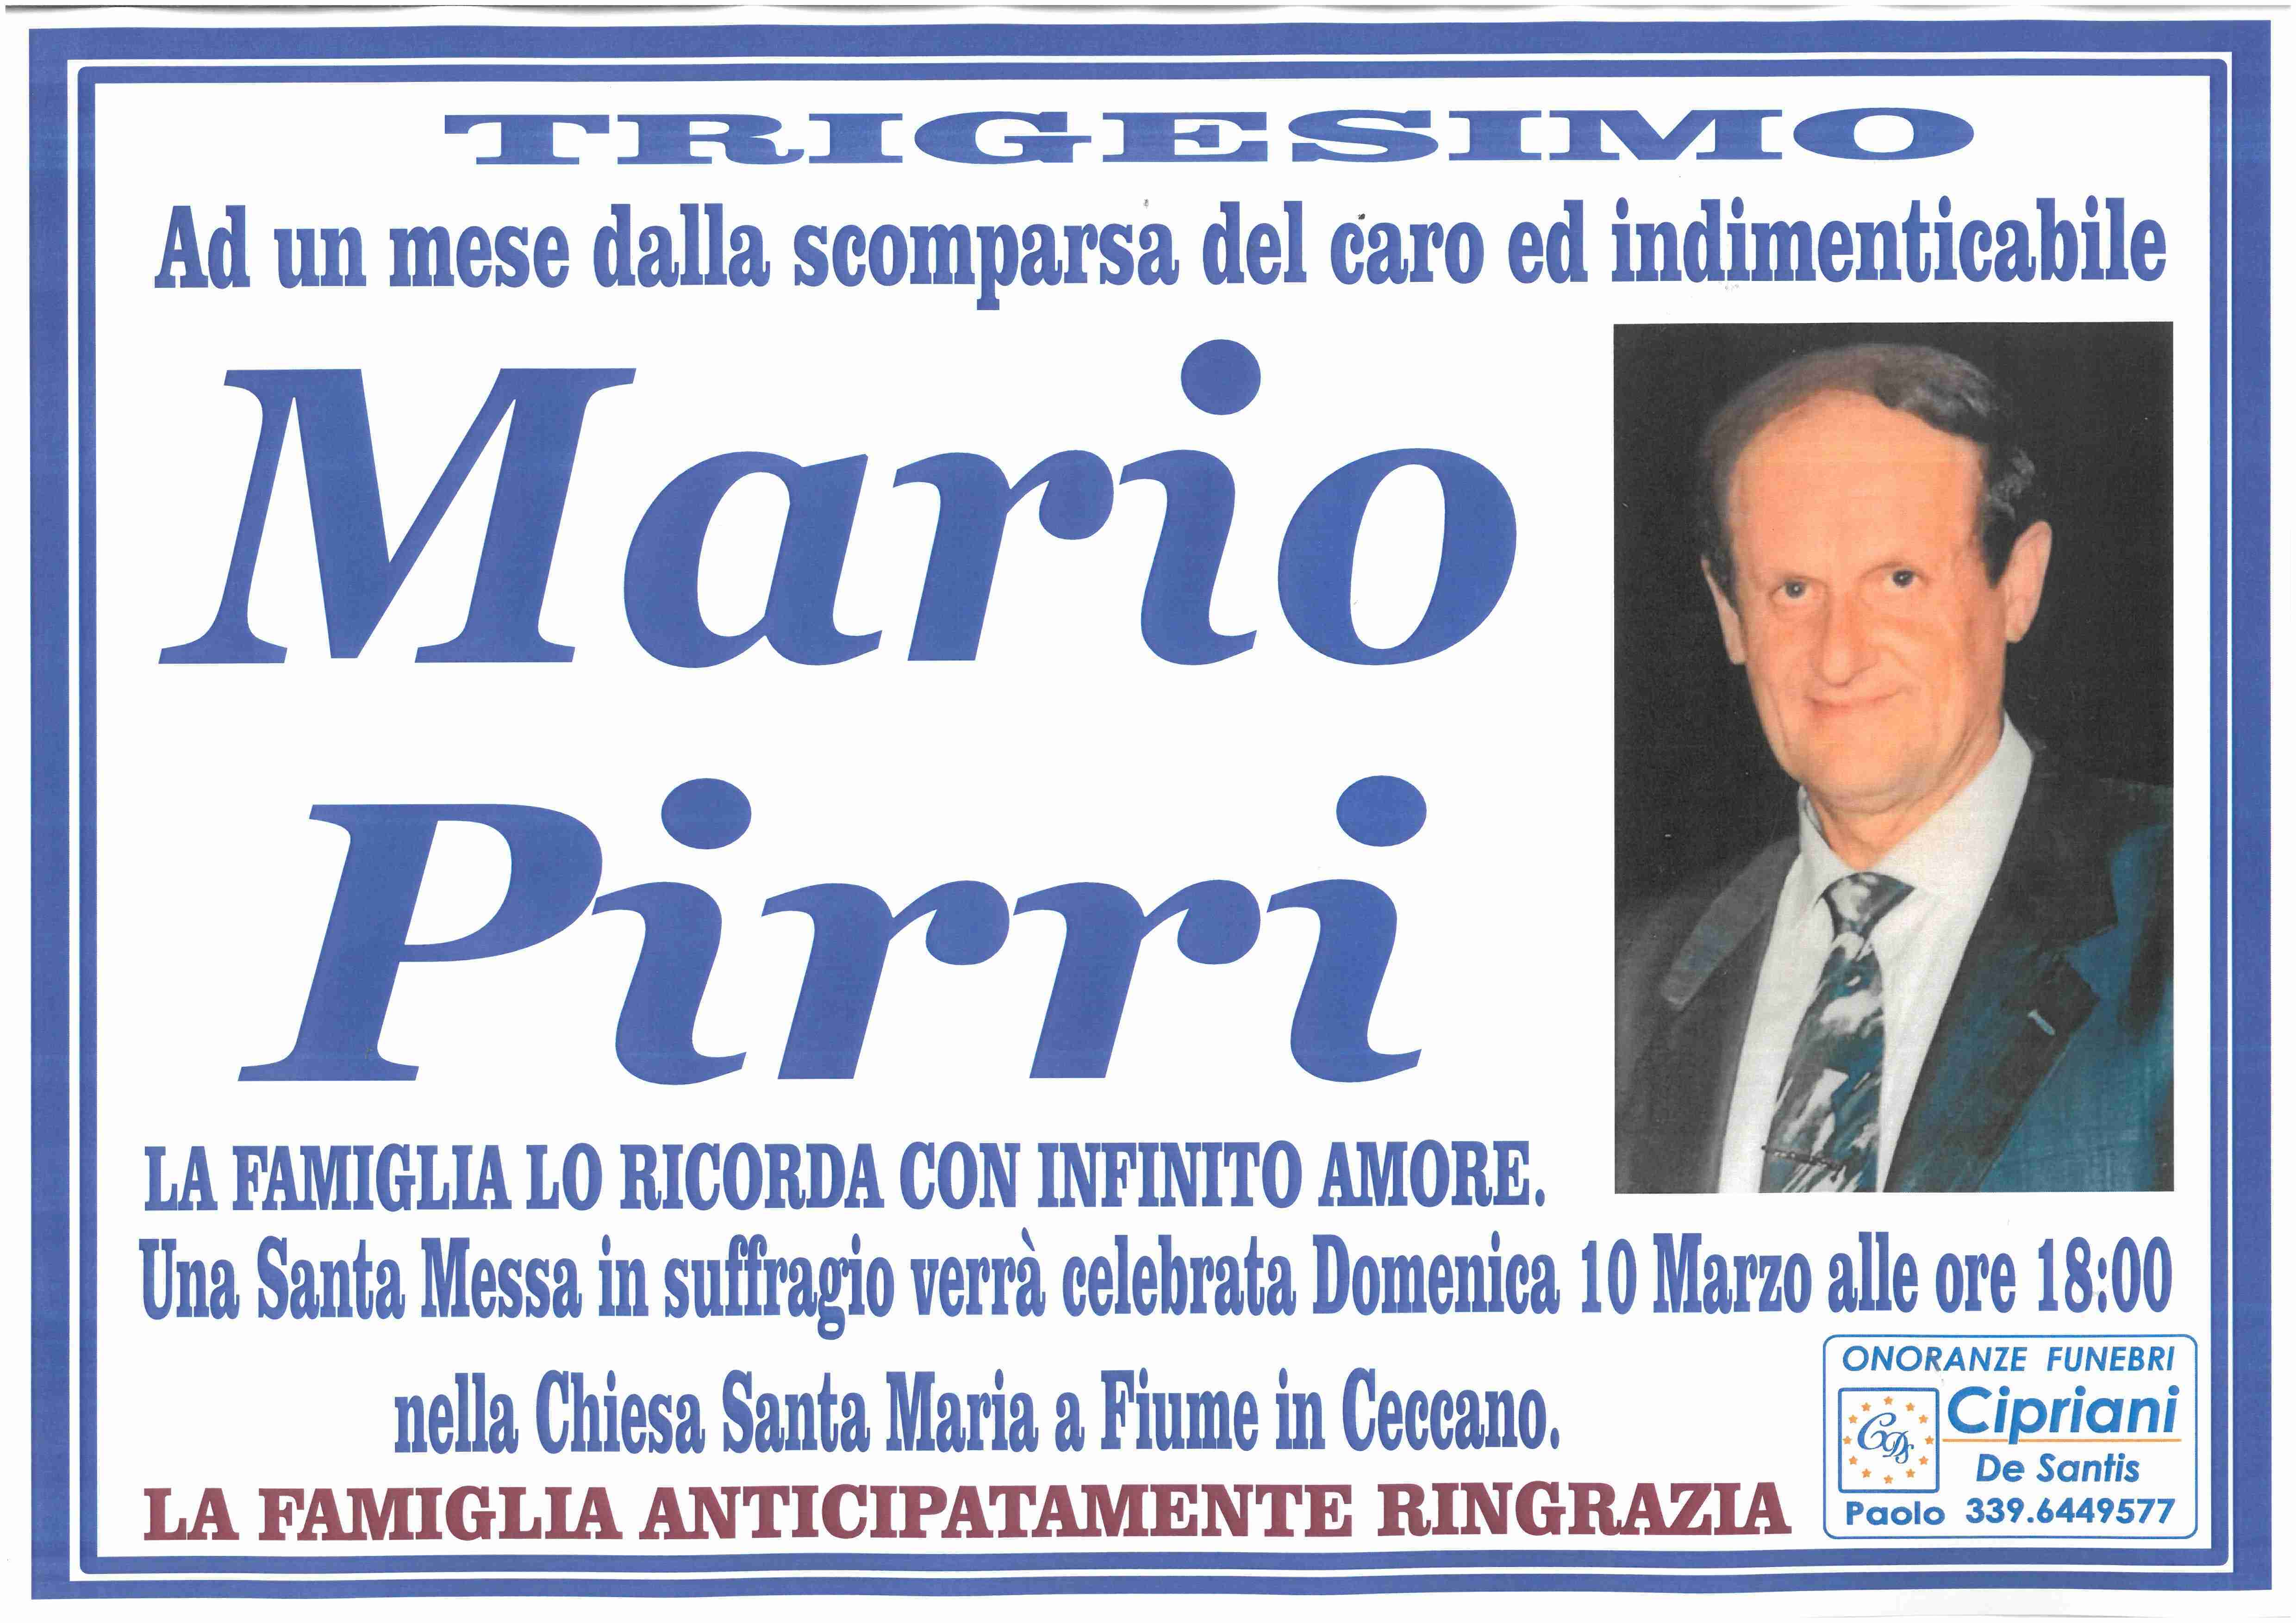 Mario Pirri